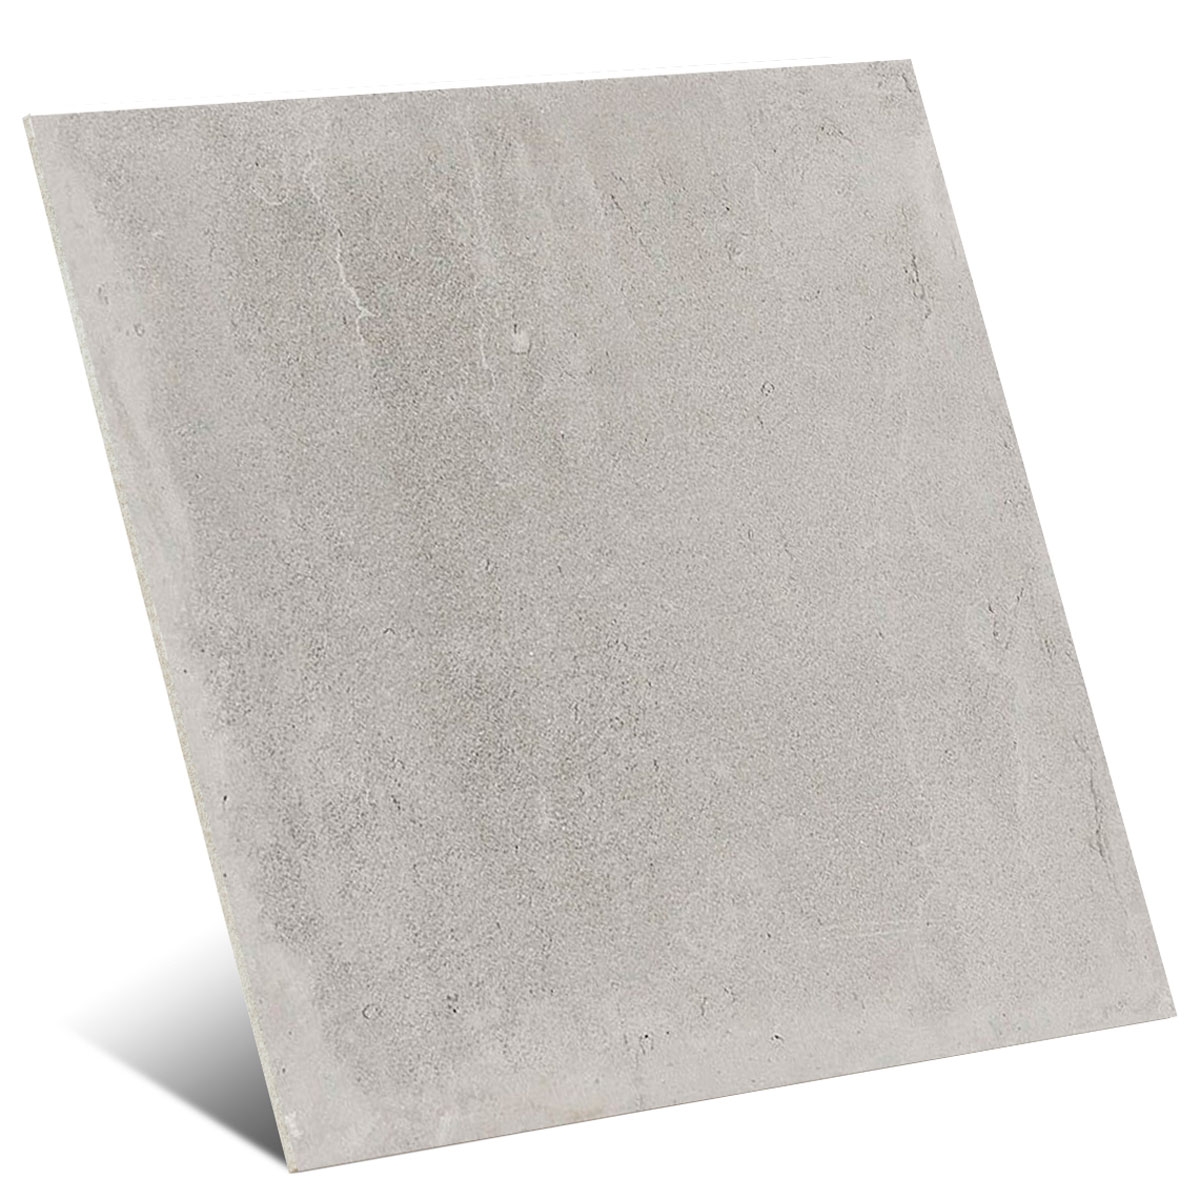 Foto de Titan Plata Decorstone 75x75 cm (caja 1.69 m2)